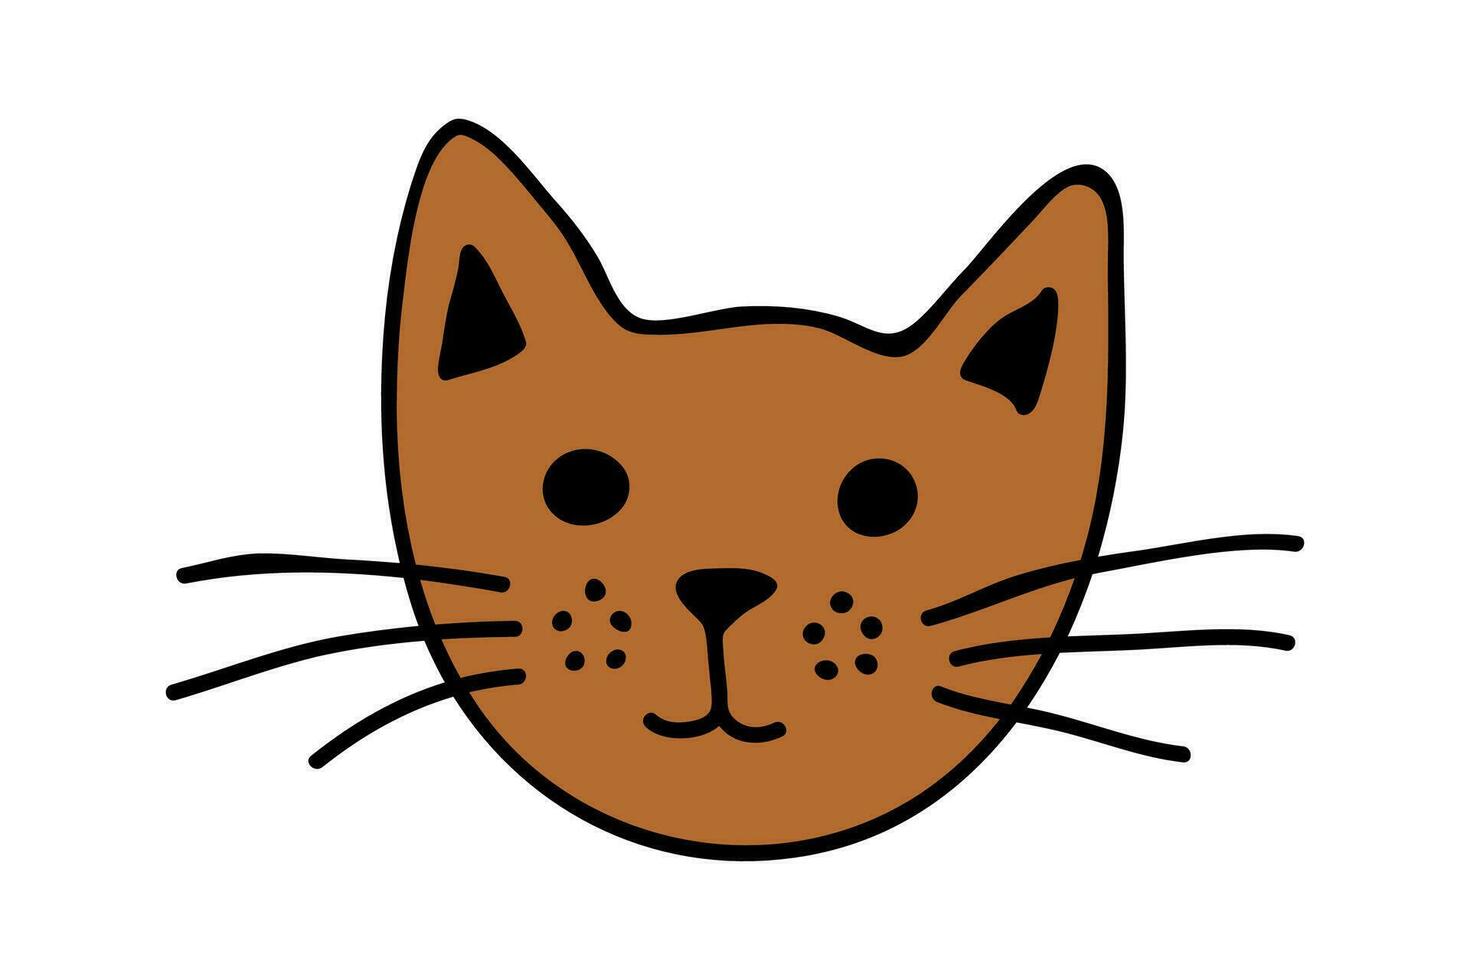 hand- getrokken kat uiteinde van een loop clip art. schattig huisdier gezicht tekening vector